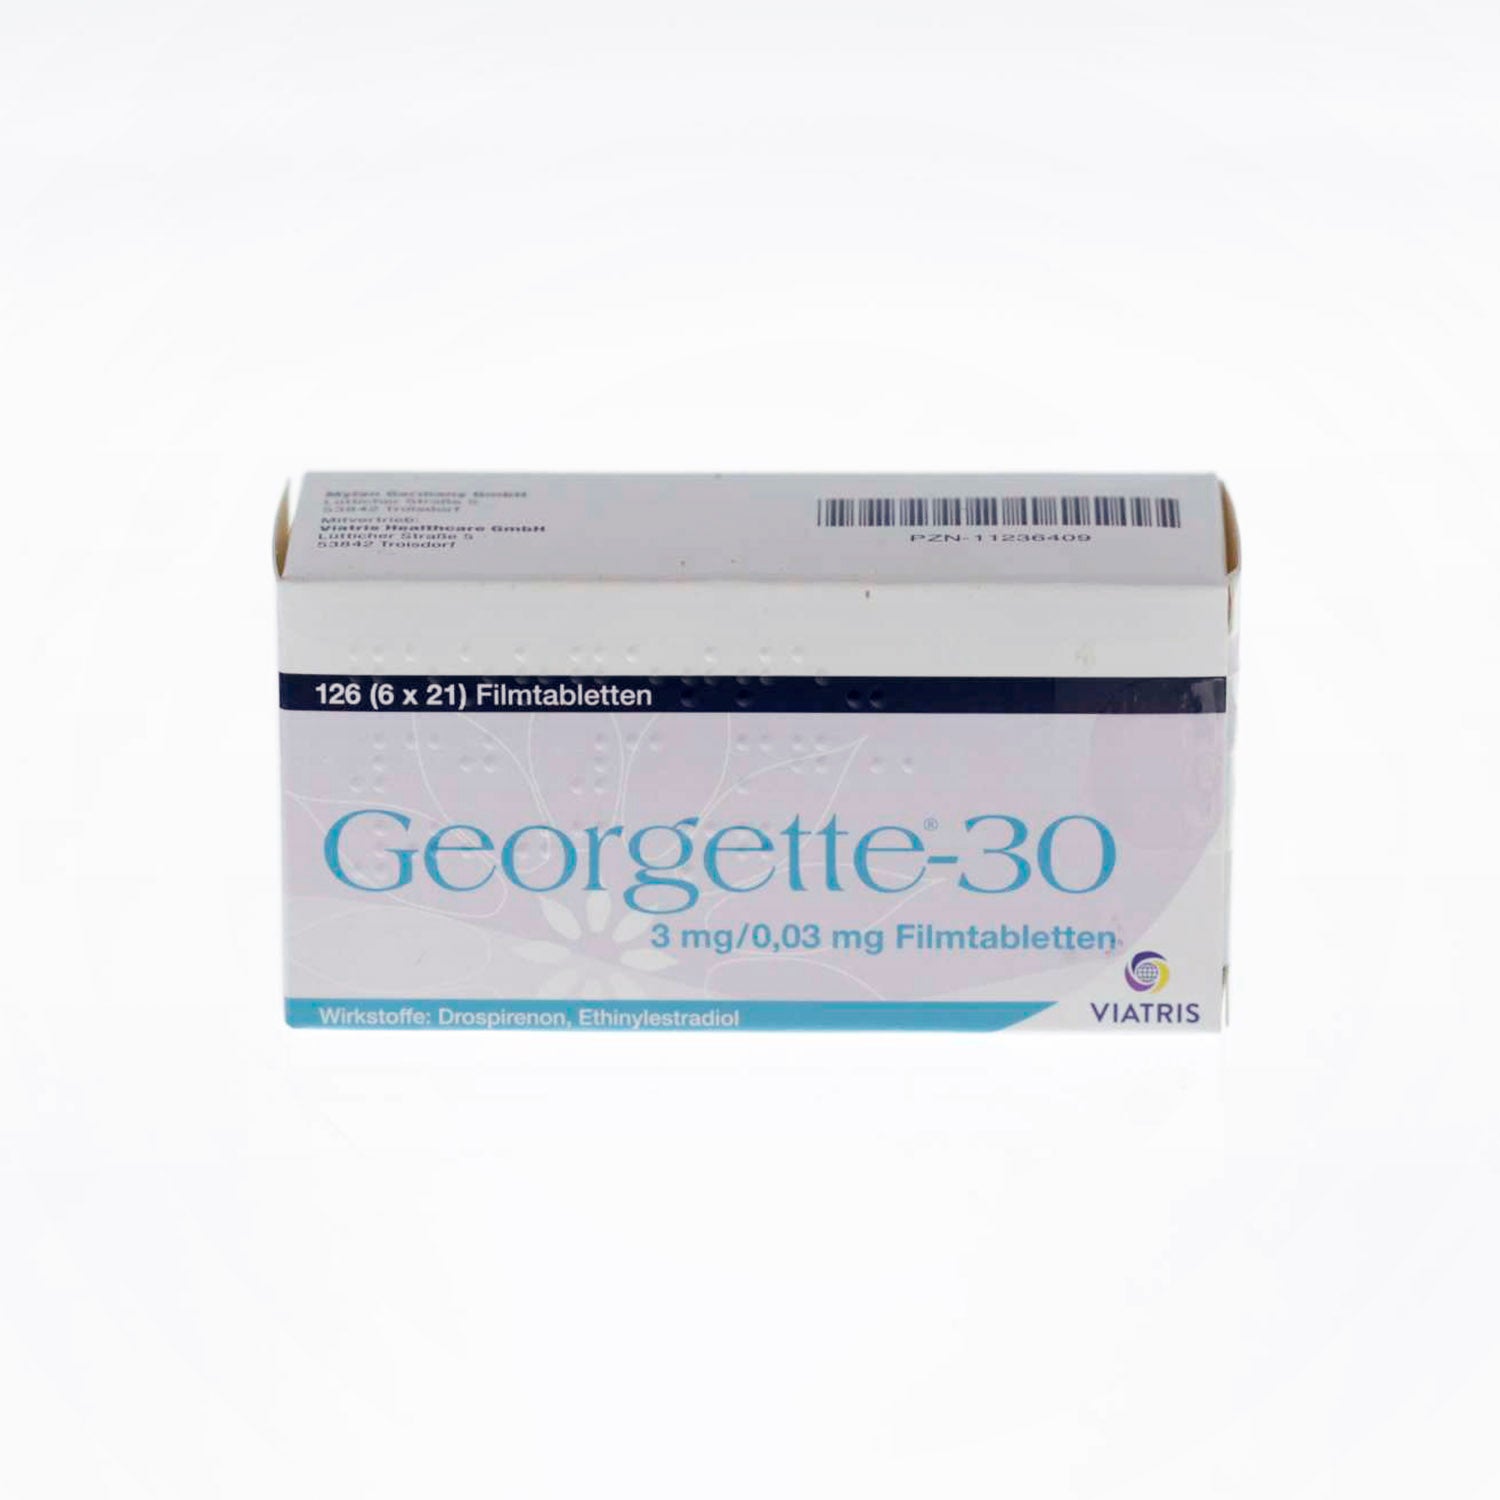 Georgette-30 3mg/0.03mg